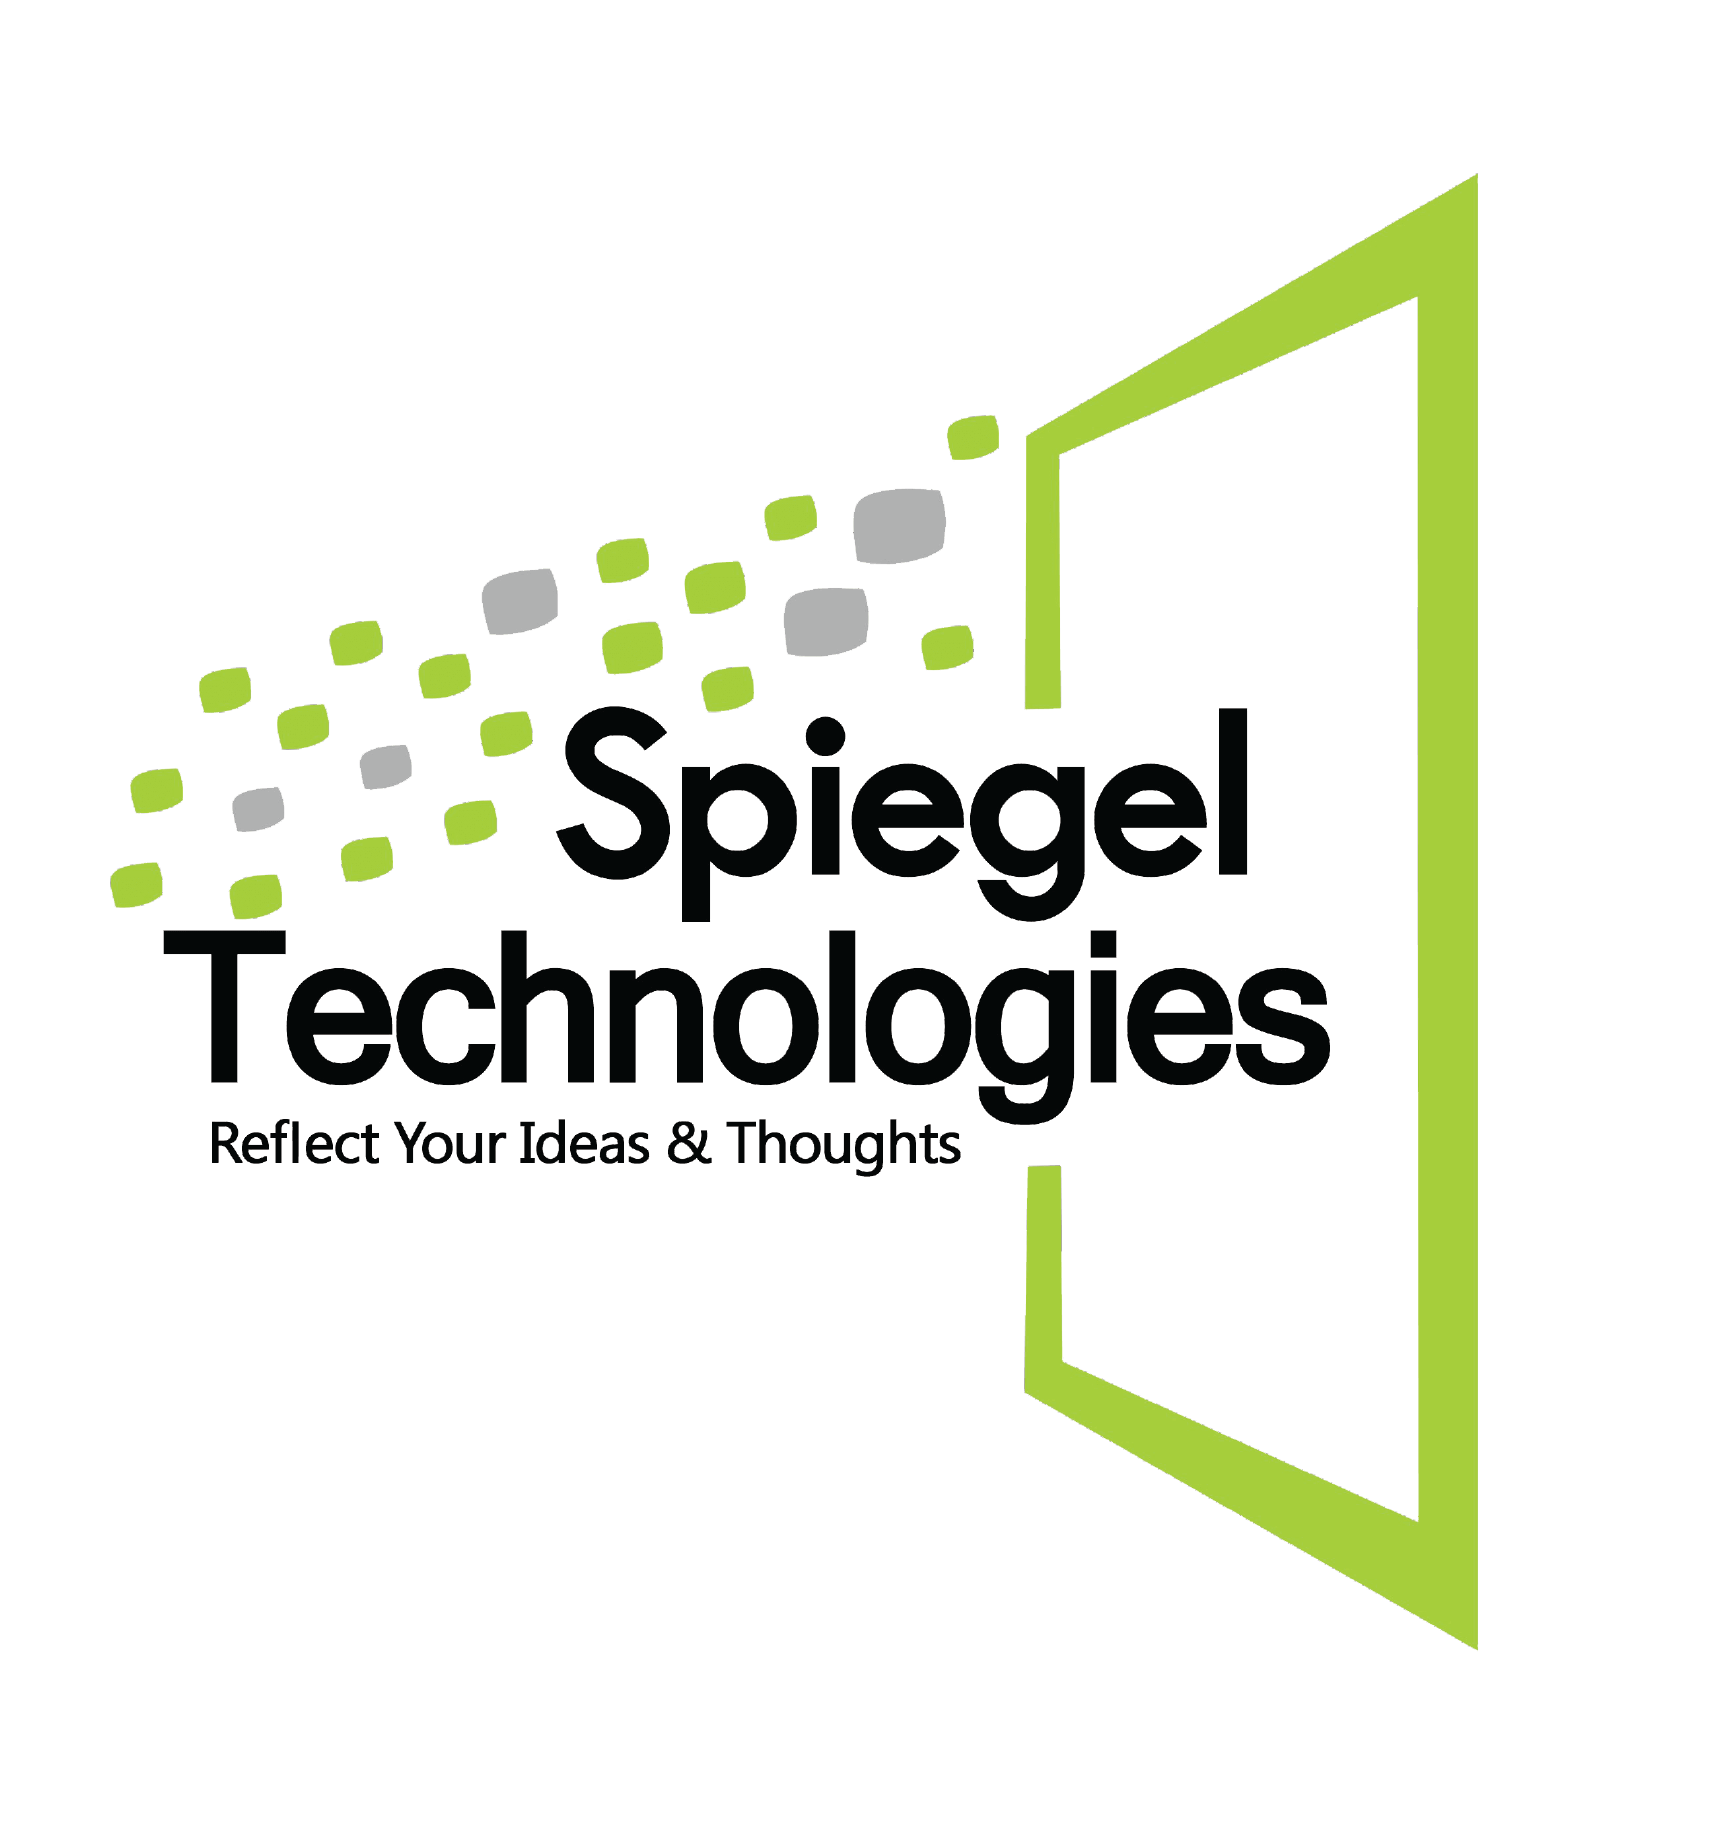 Spiegel Technologies, a chatbot developer